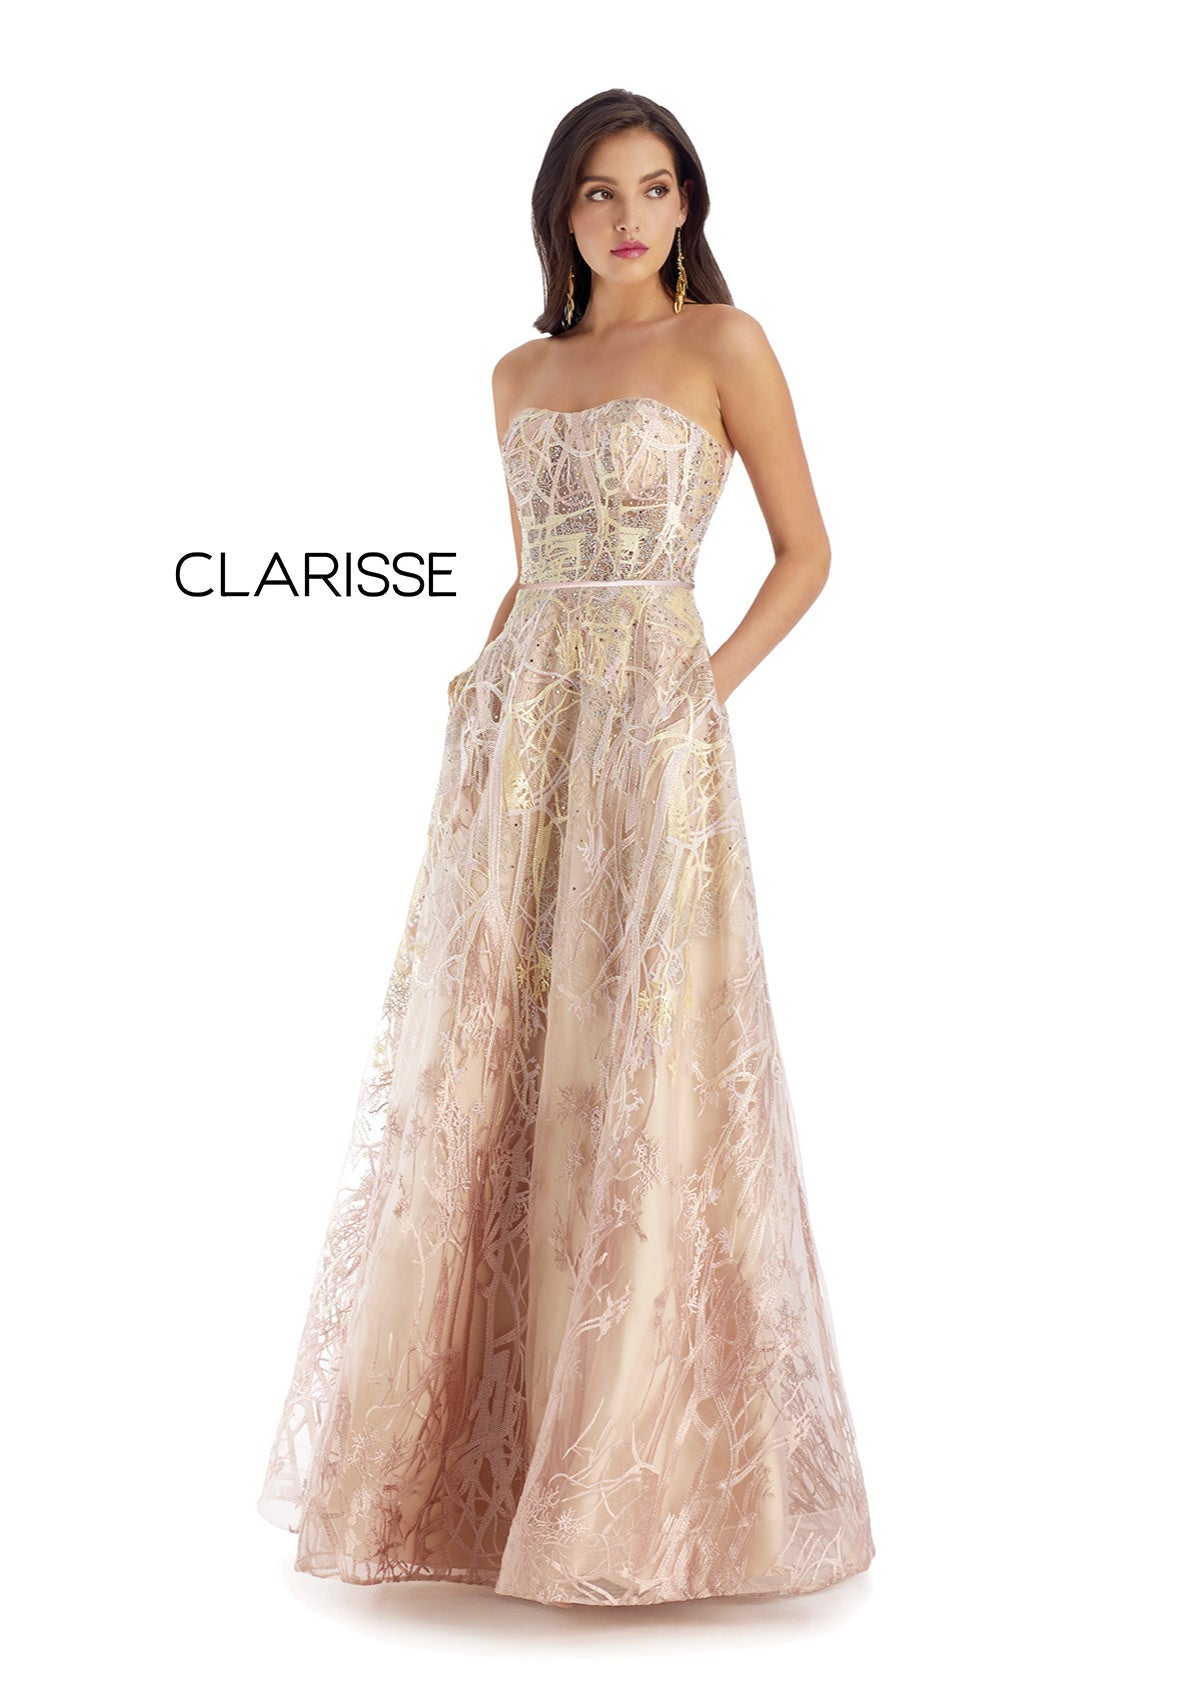 Style #5108 Clarisse